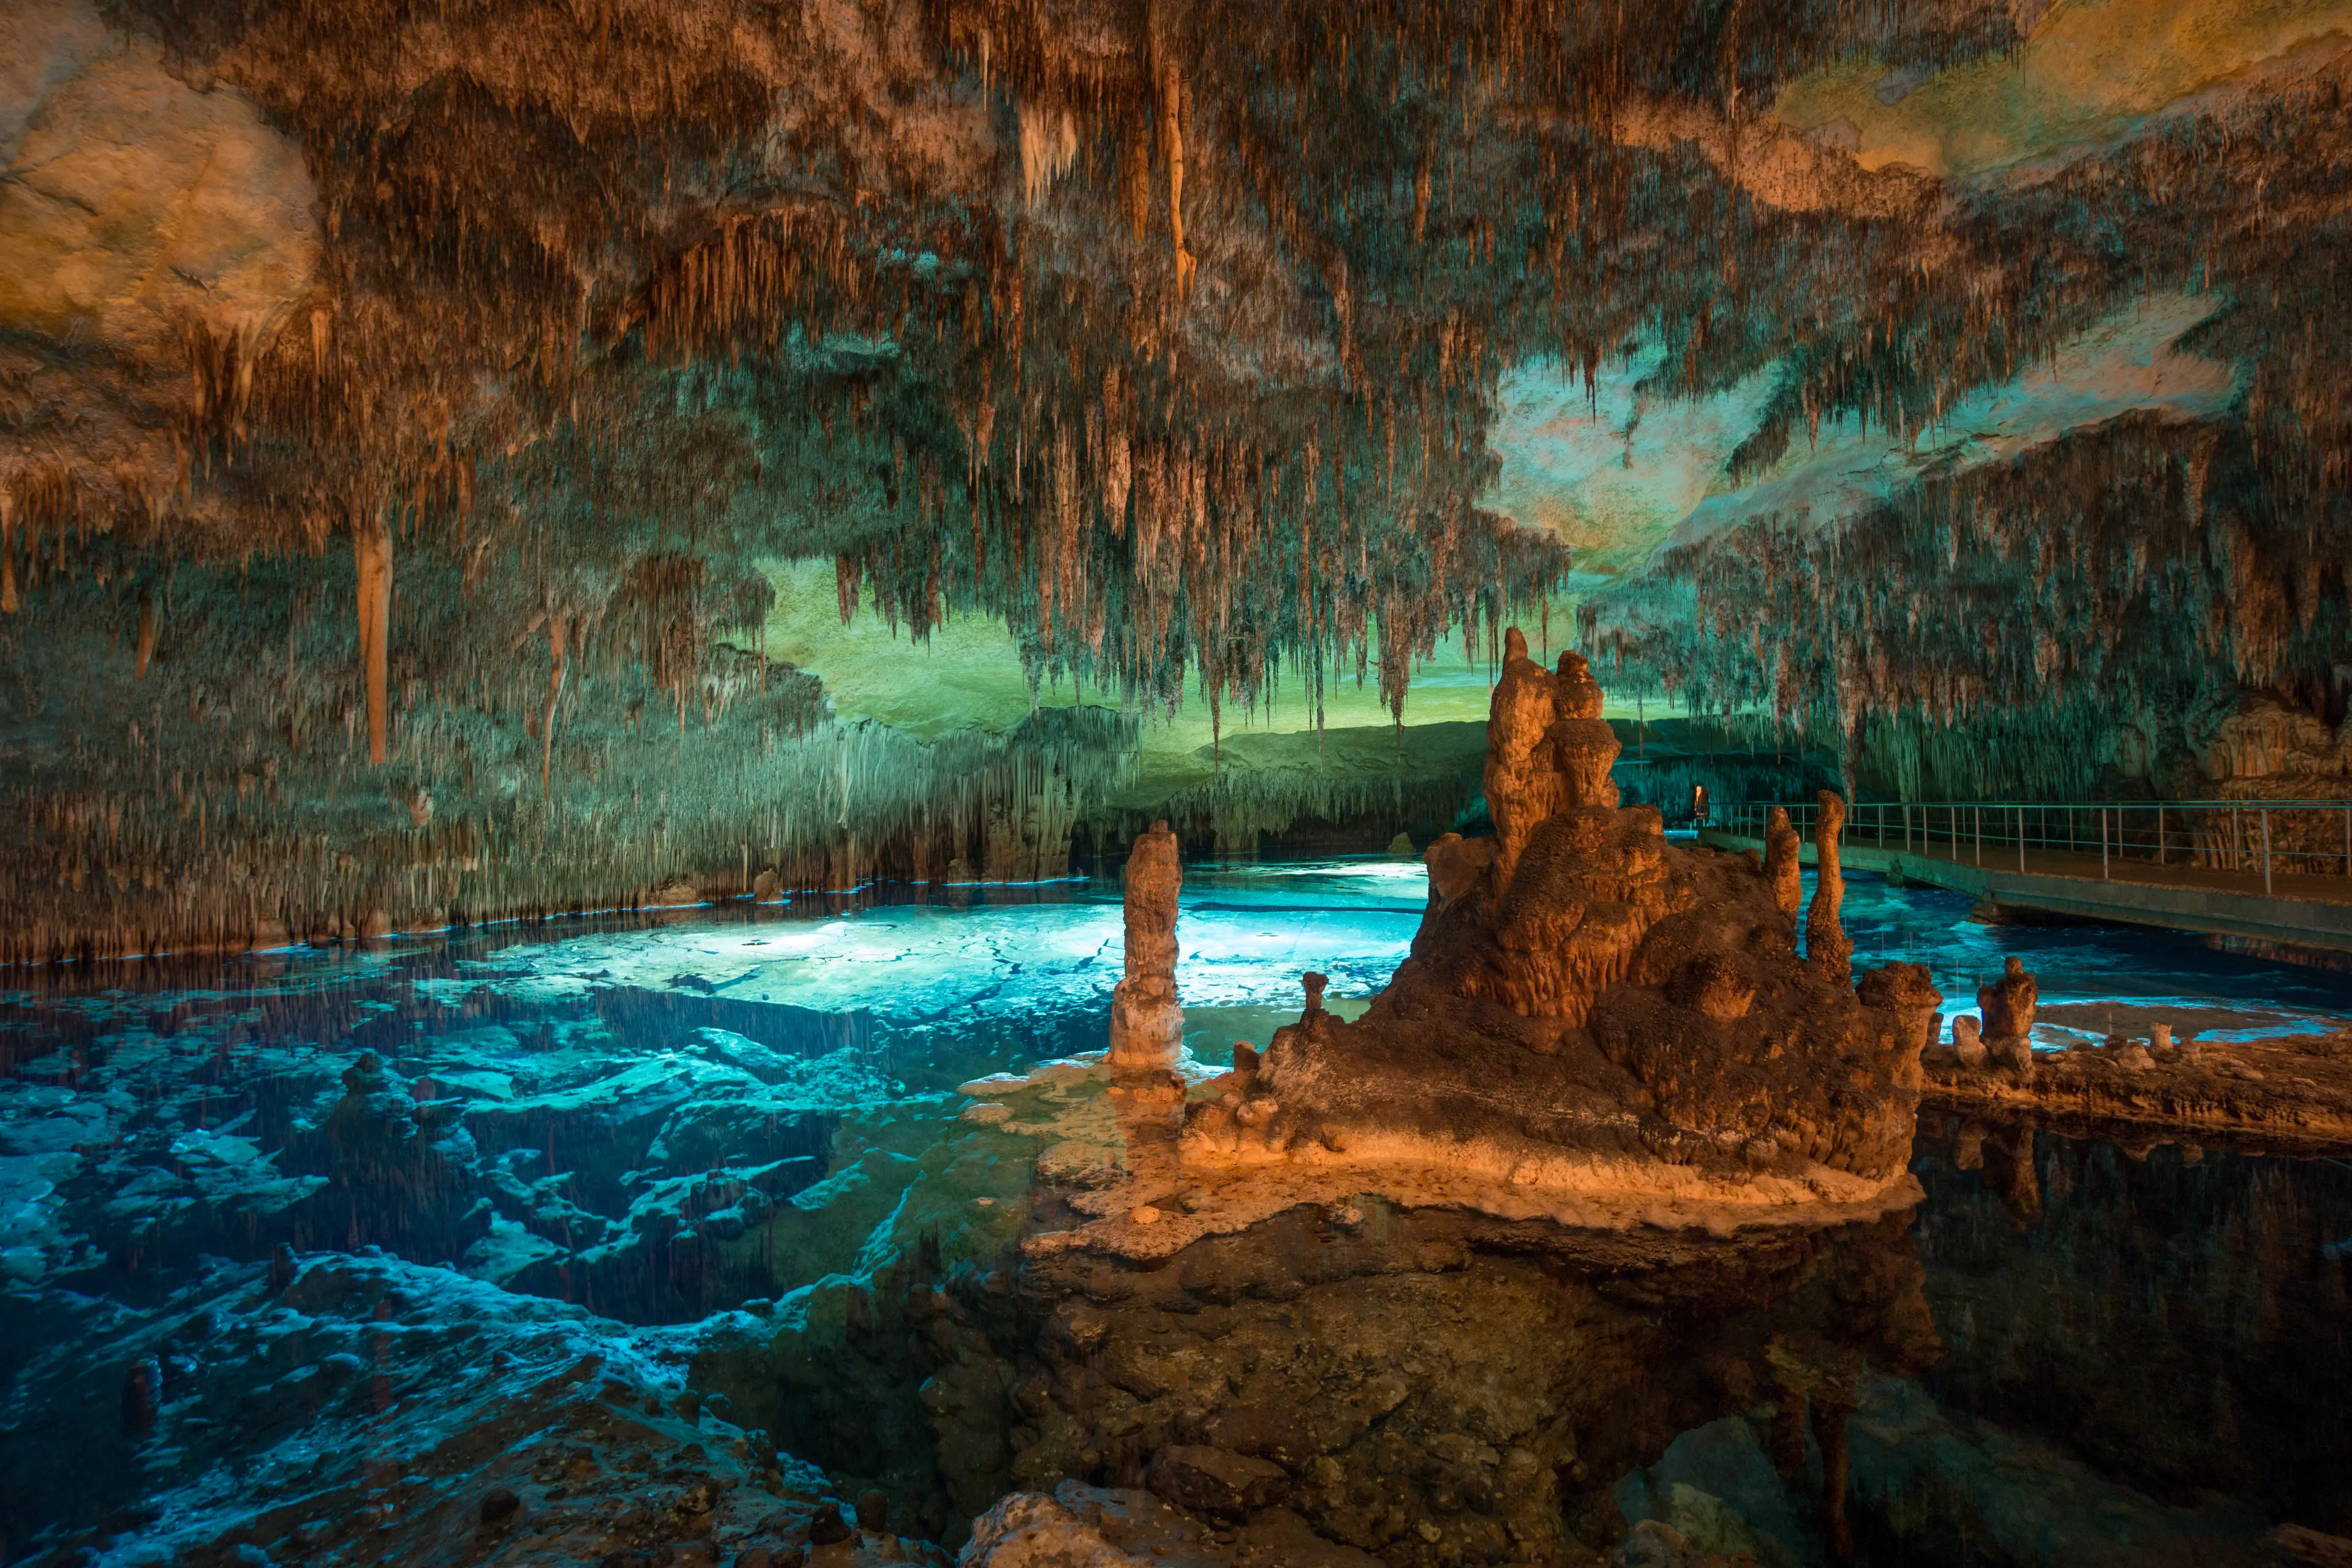 Drach caves